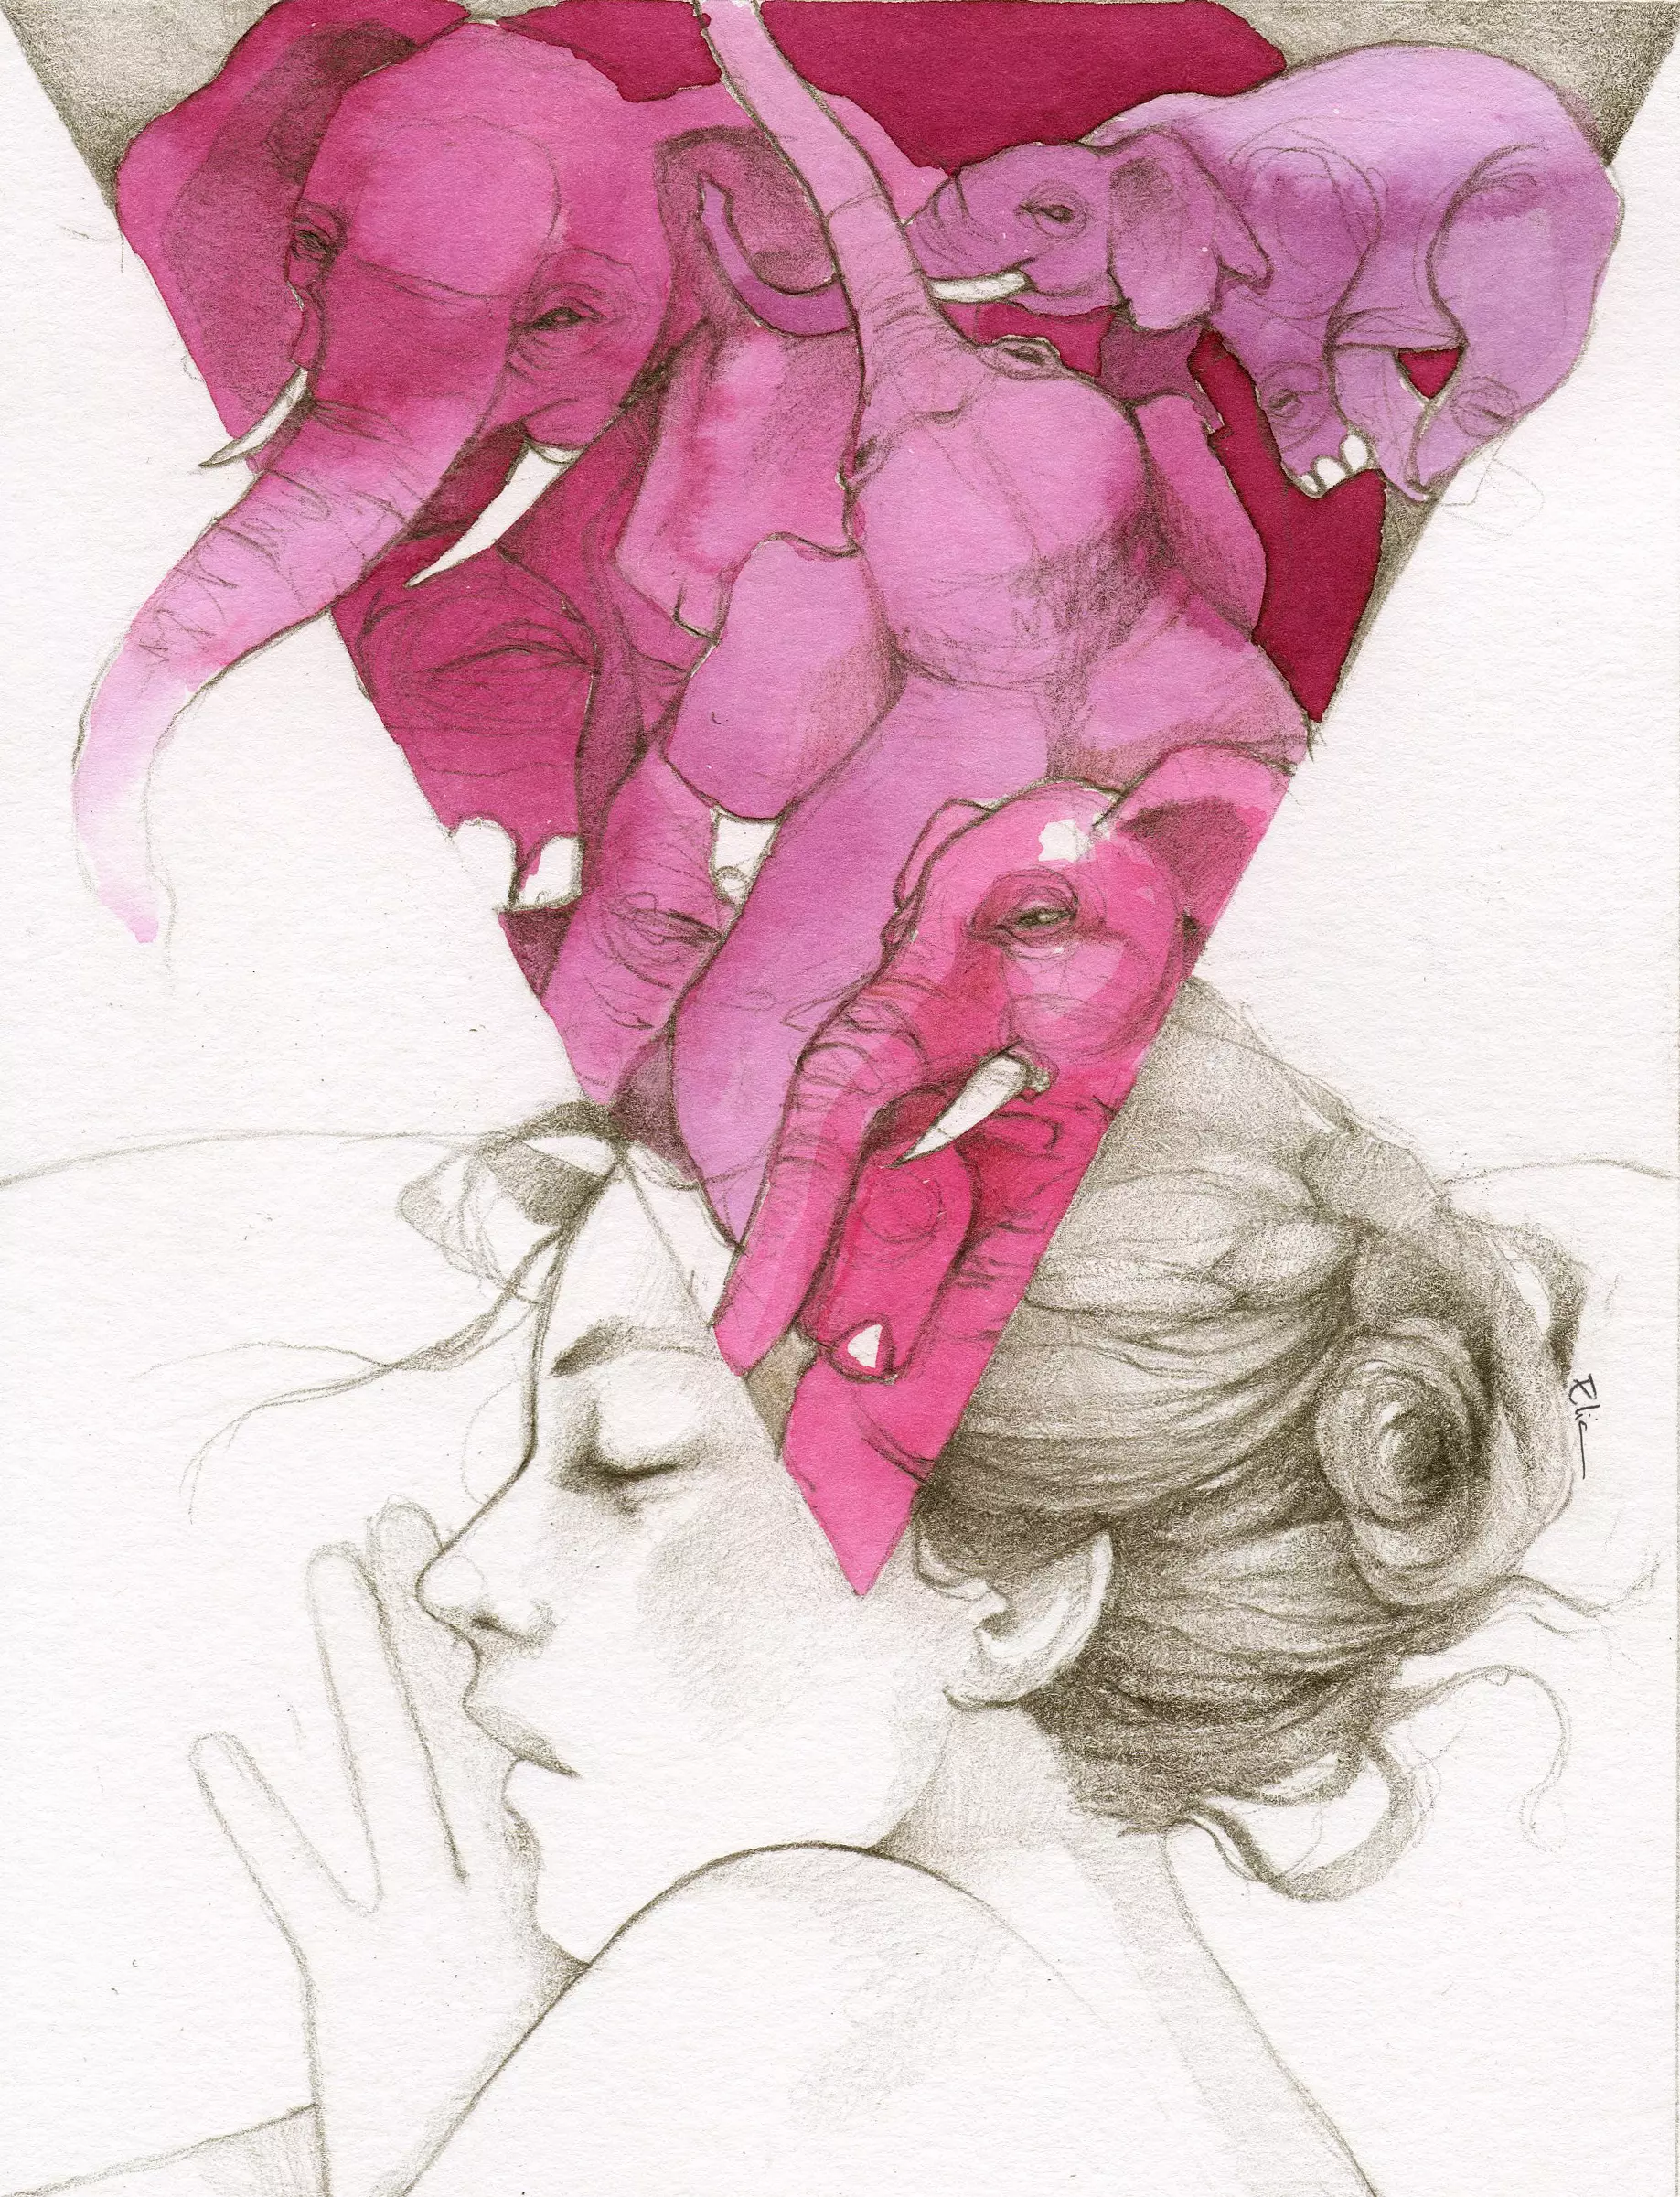 Pink Elephants, Elia Mervi